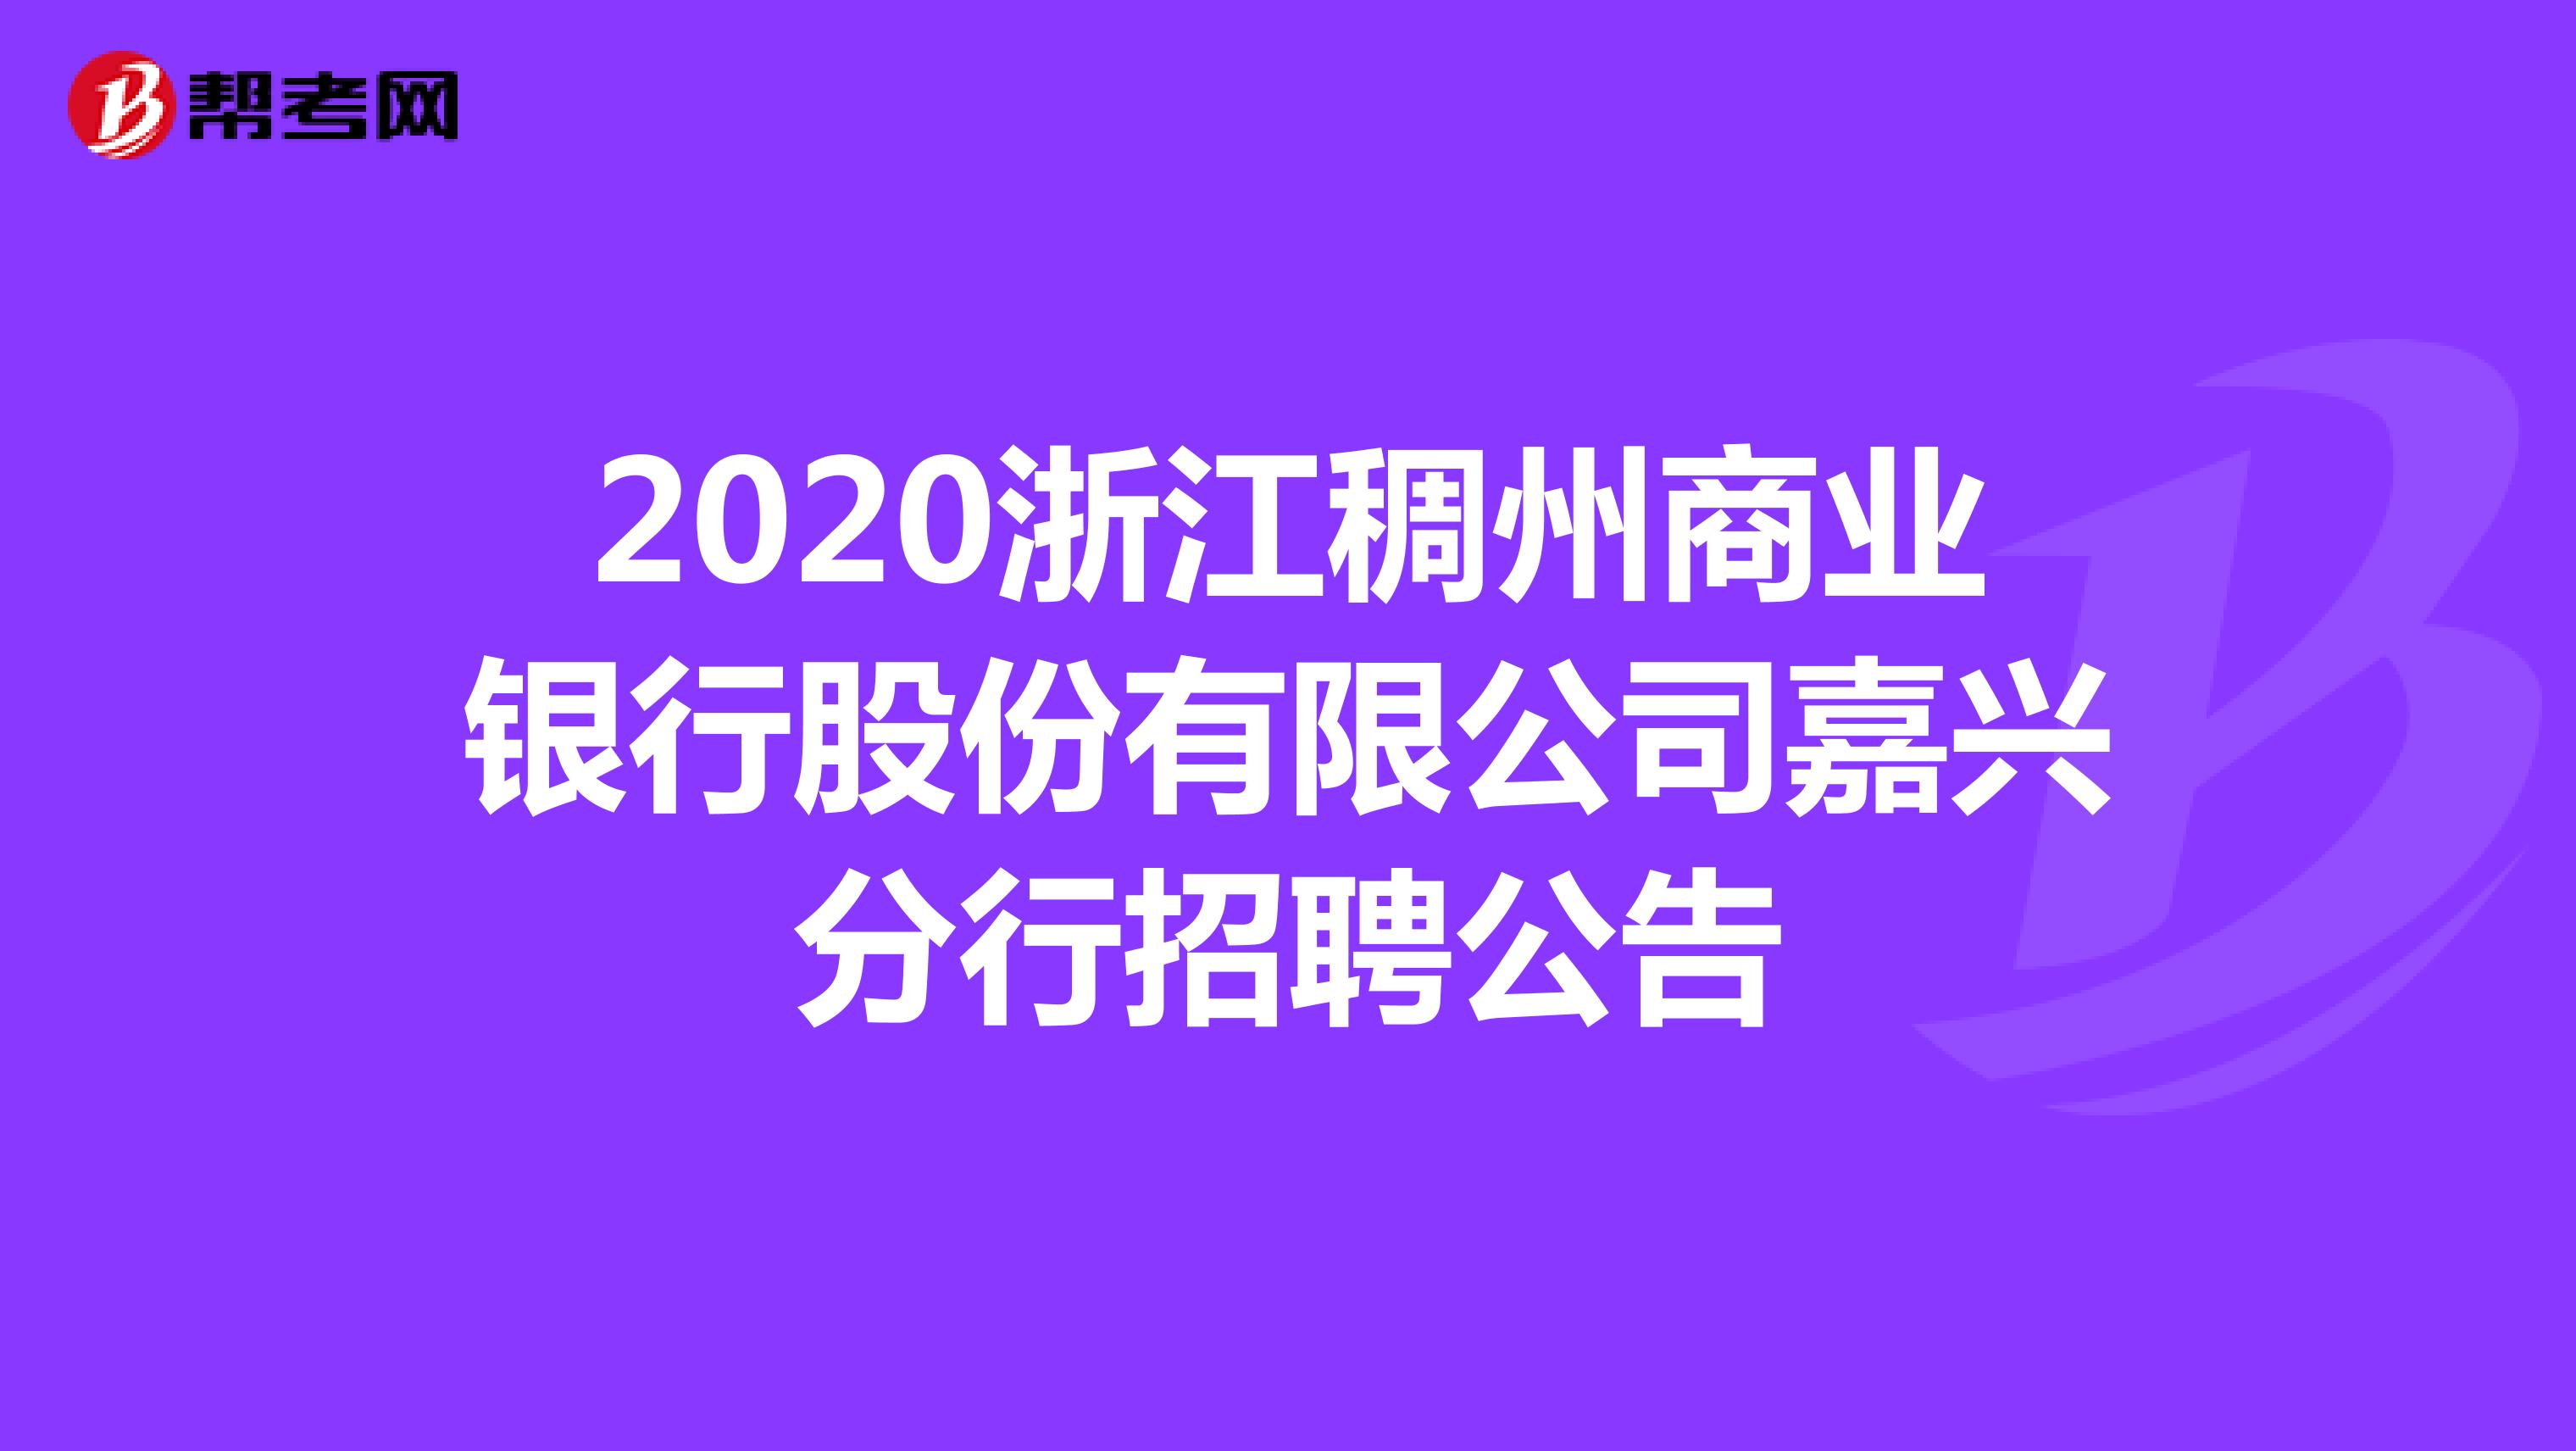 2020浙江稠州商业银行股份有限公司嘉兴分行招聘公告